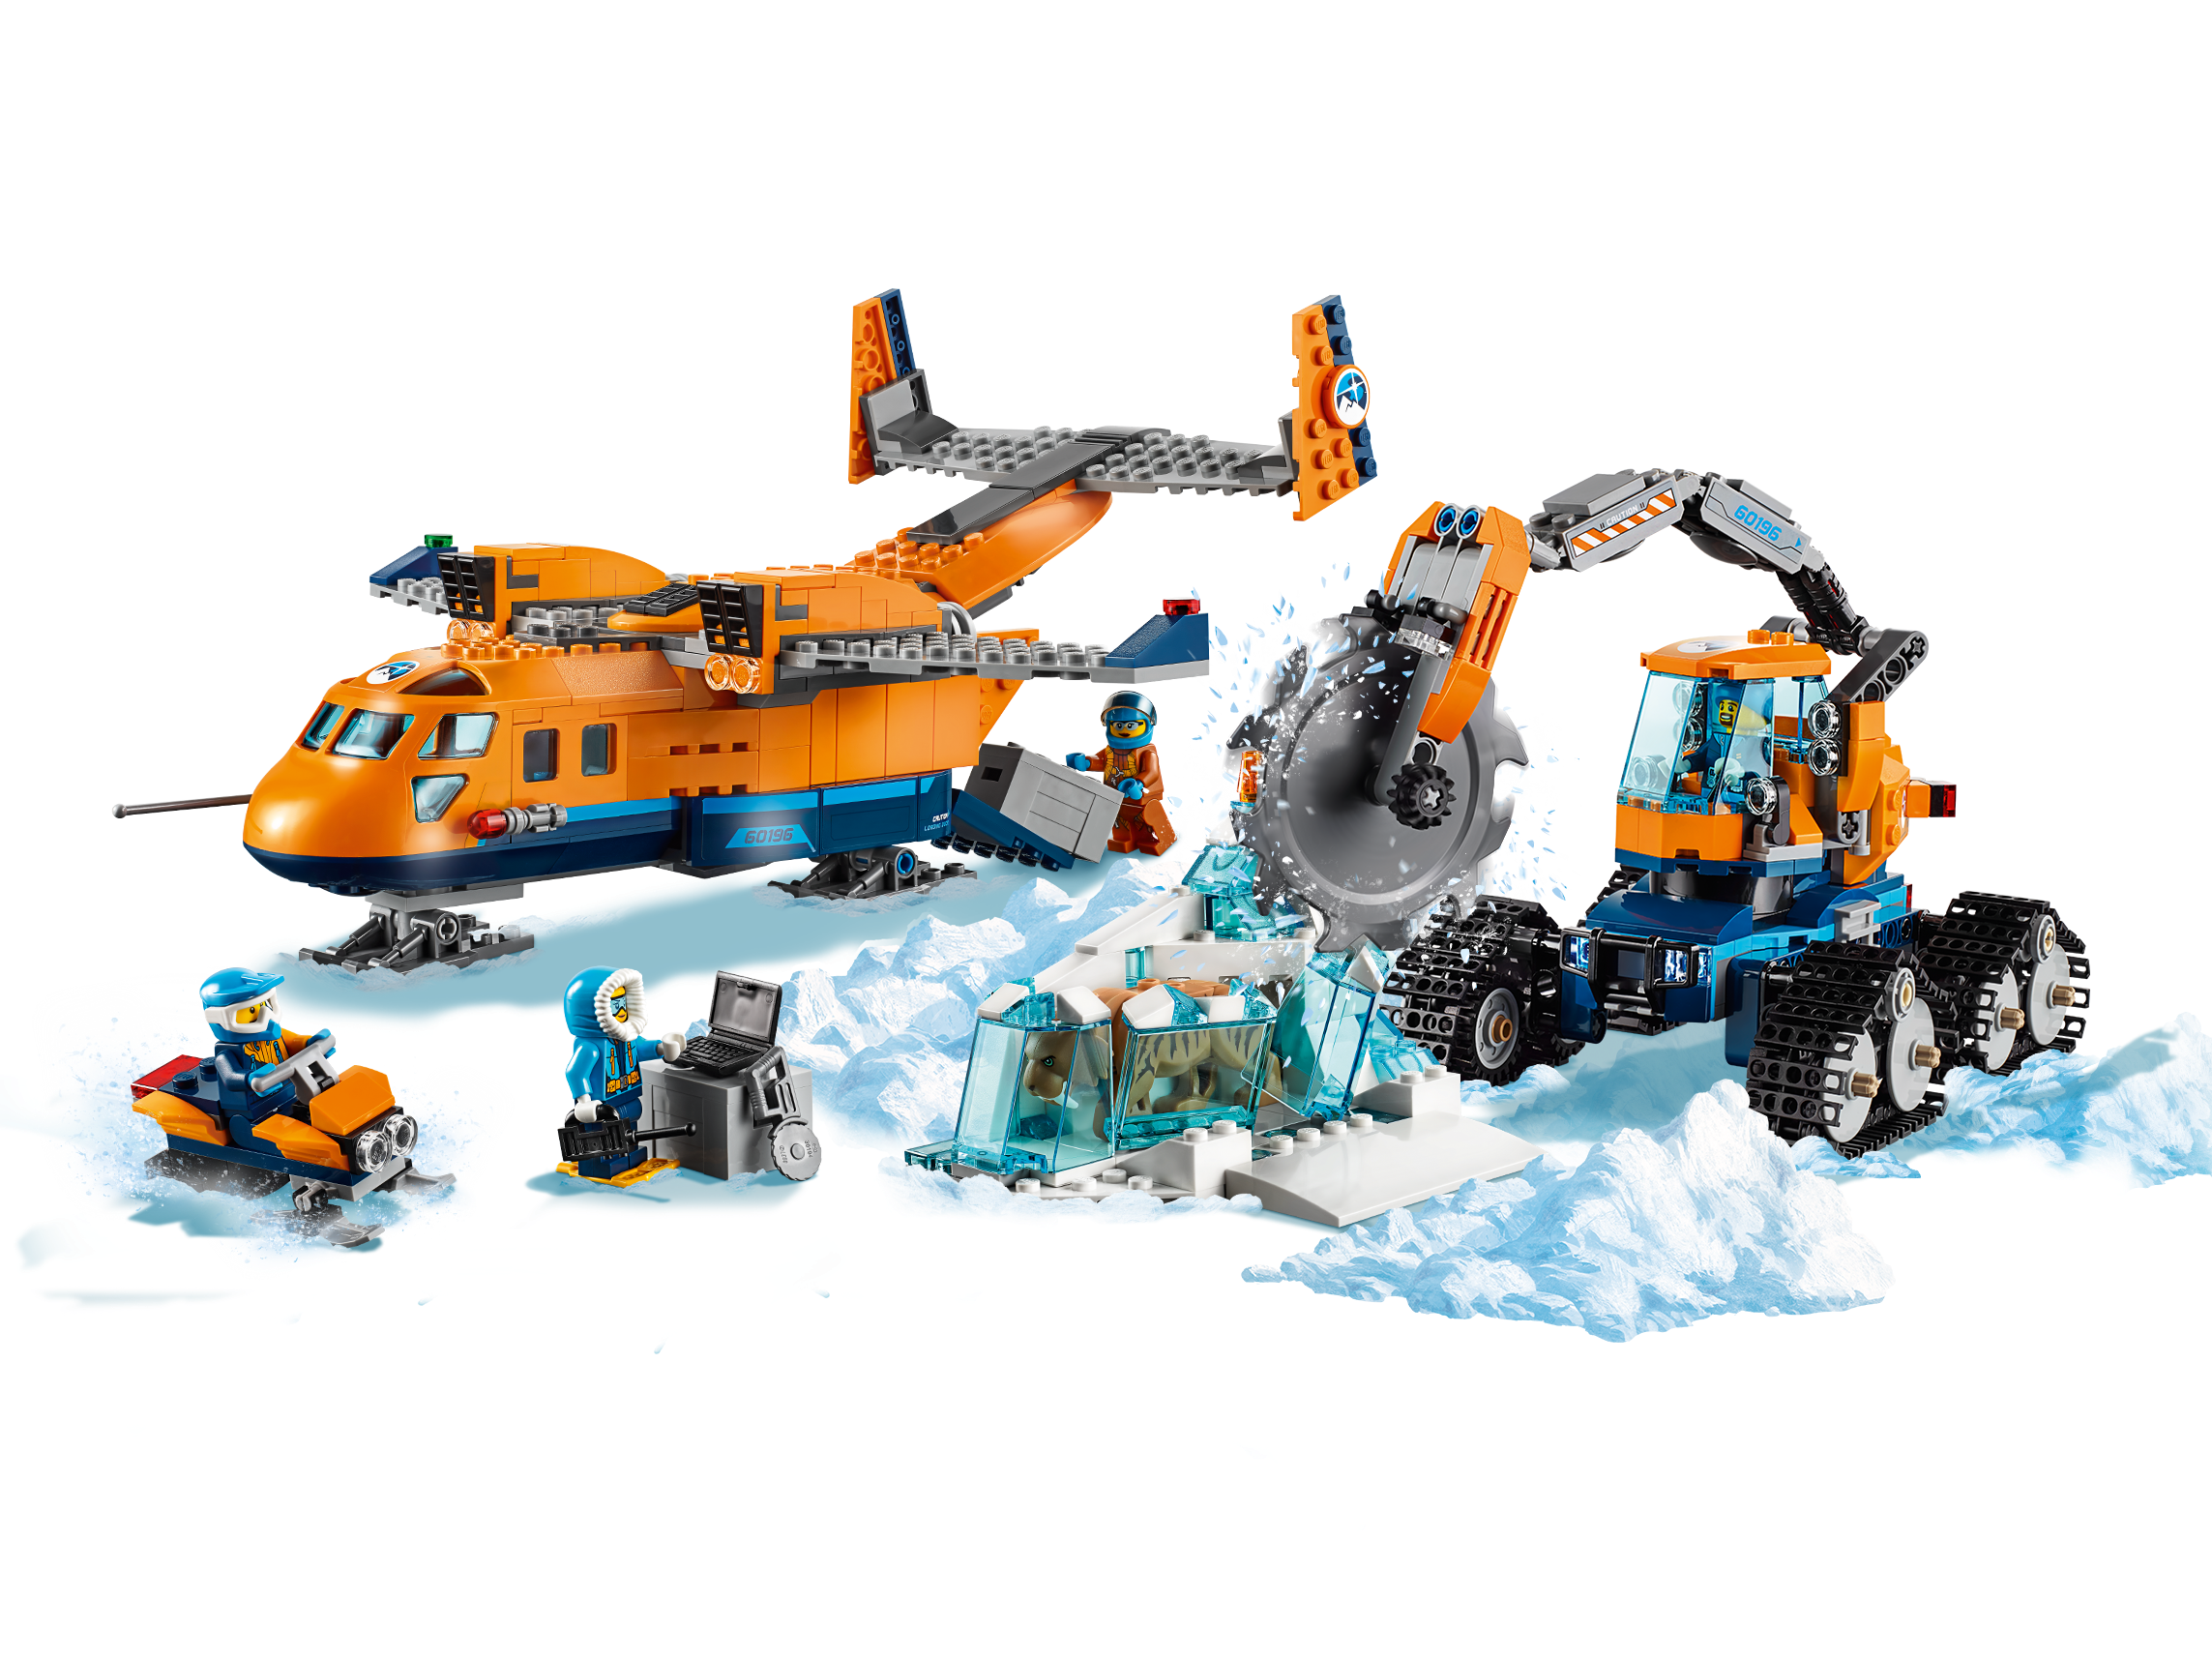 Avión lego city lego minifigure lego 60064 city ártico suministro avión,  avión, avión, transporte, lego minifiguras png